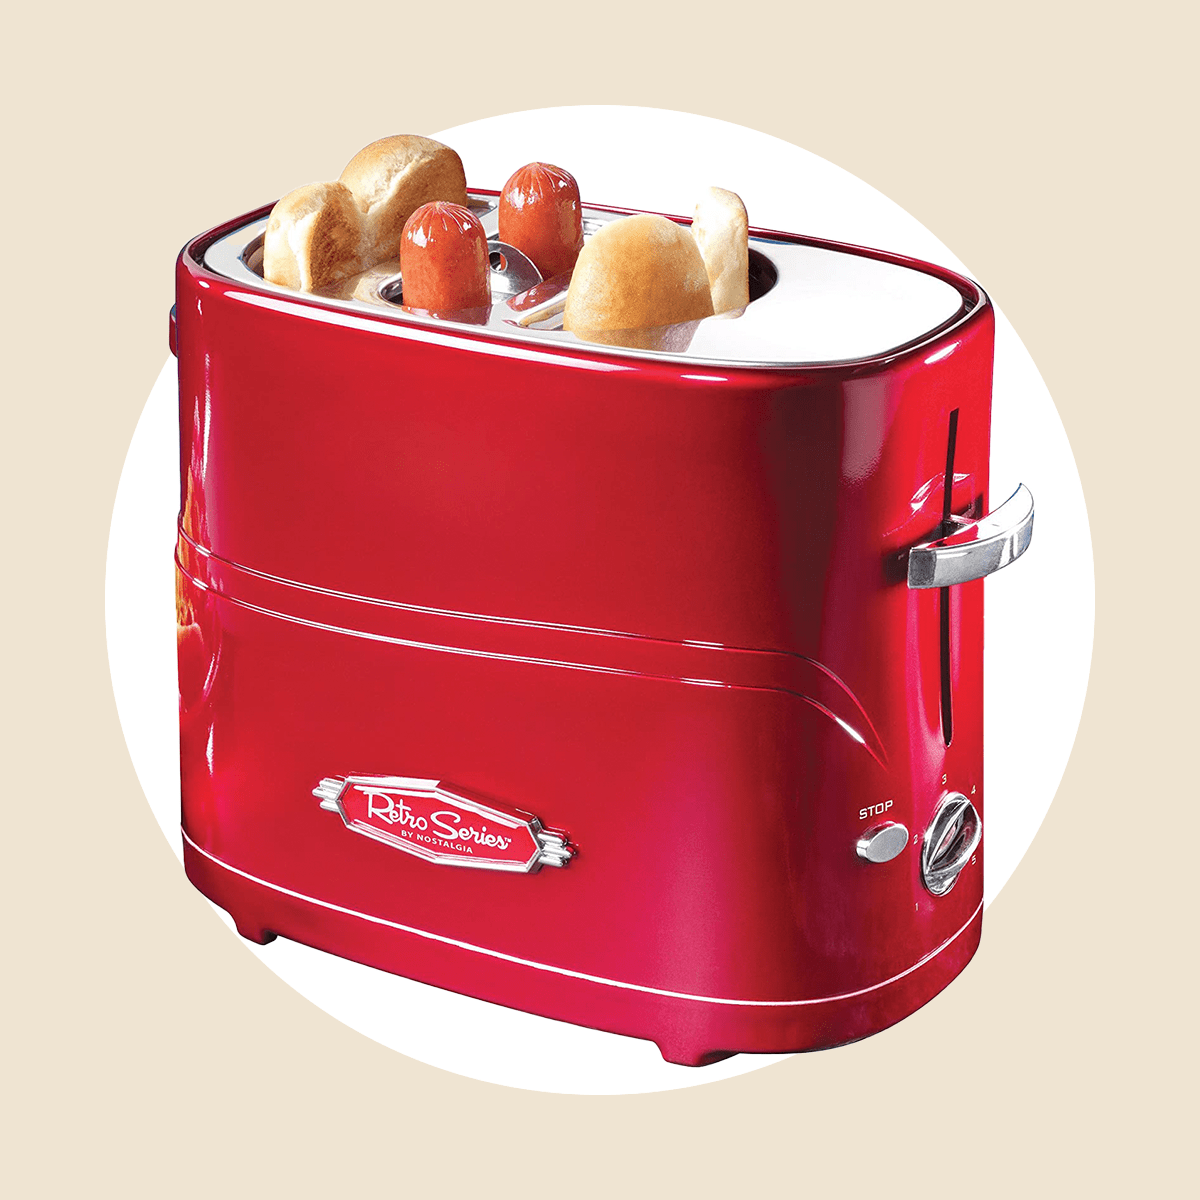 怀旧热狗烤面包机通过亚马逊